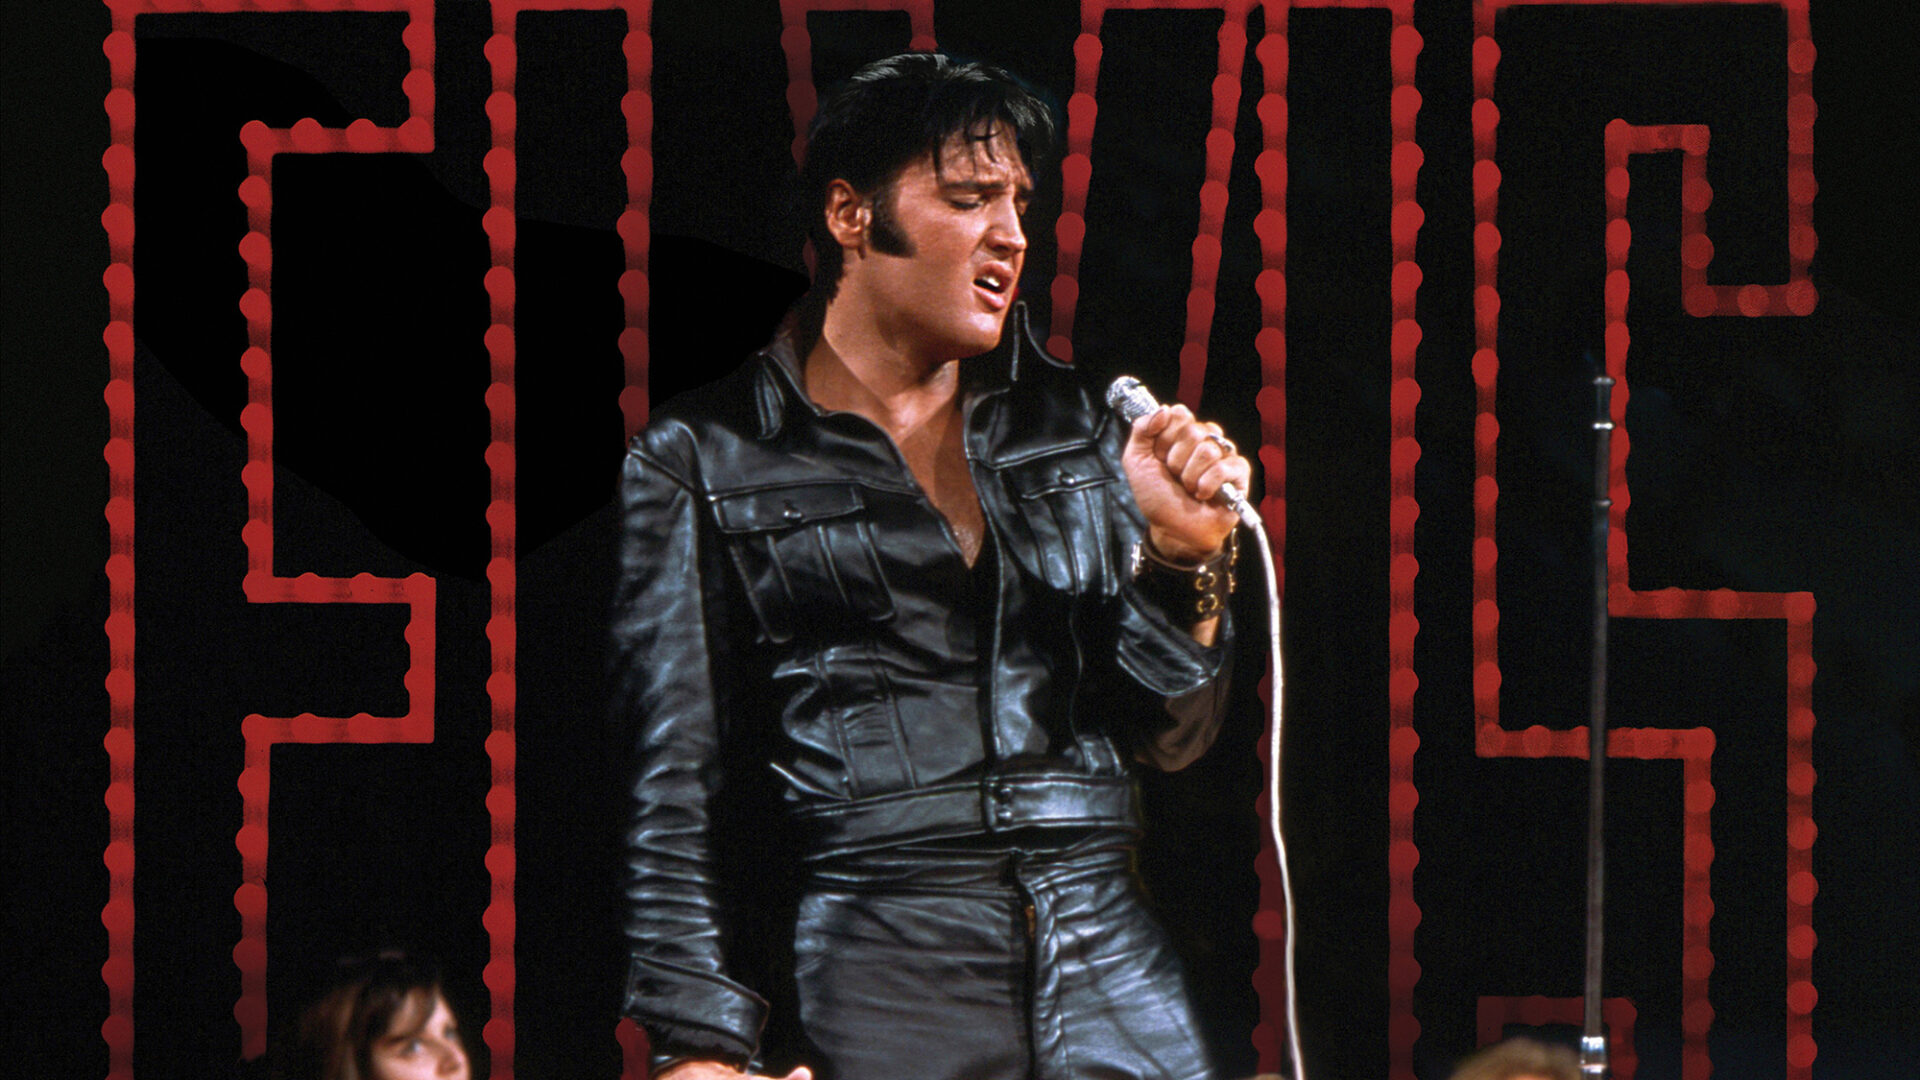 Elvis Presley '68 Comeback Special